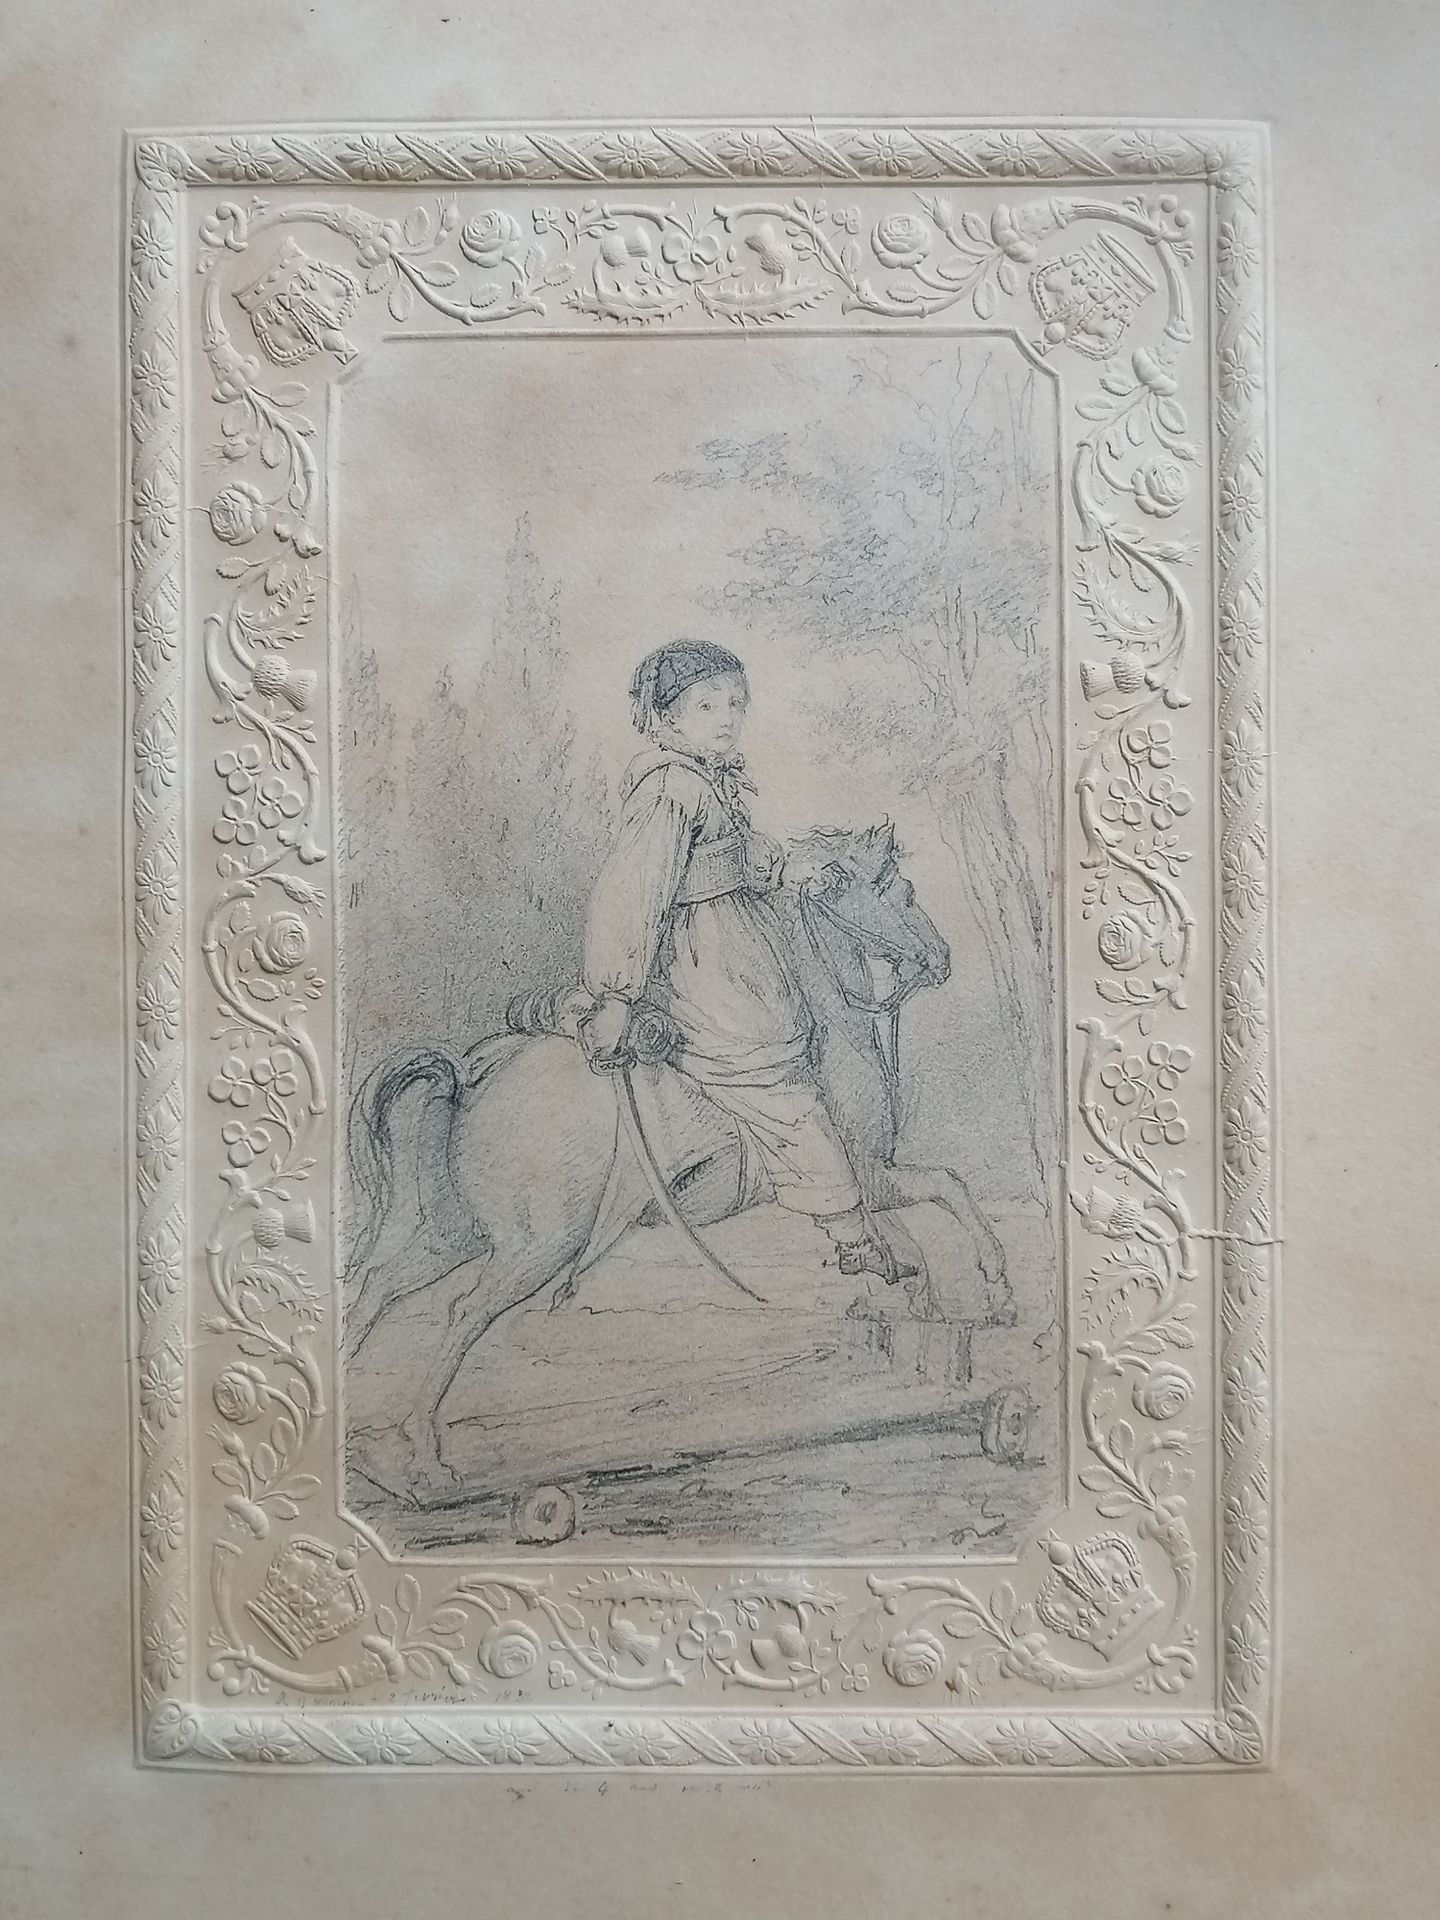 Null 19世纪法国学校

铅笔画

穿着马穆鲁克服装的小男孩骑在木马上的画像

角落上有卷轴和皇冠的华夫饼框架

日期为1832年2月2日

带鱼片的木箱
&hellip;